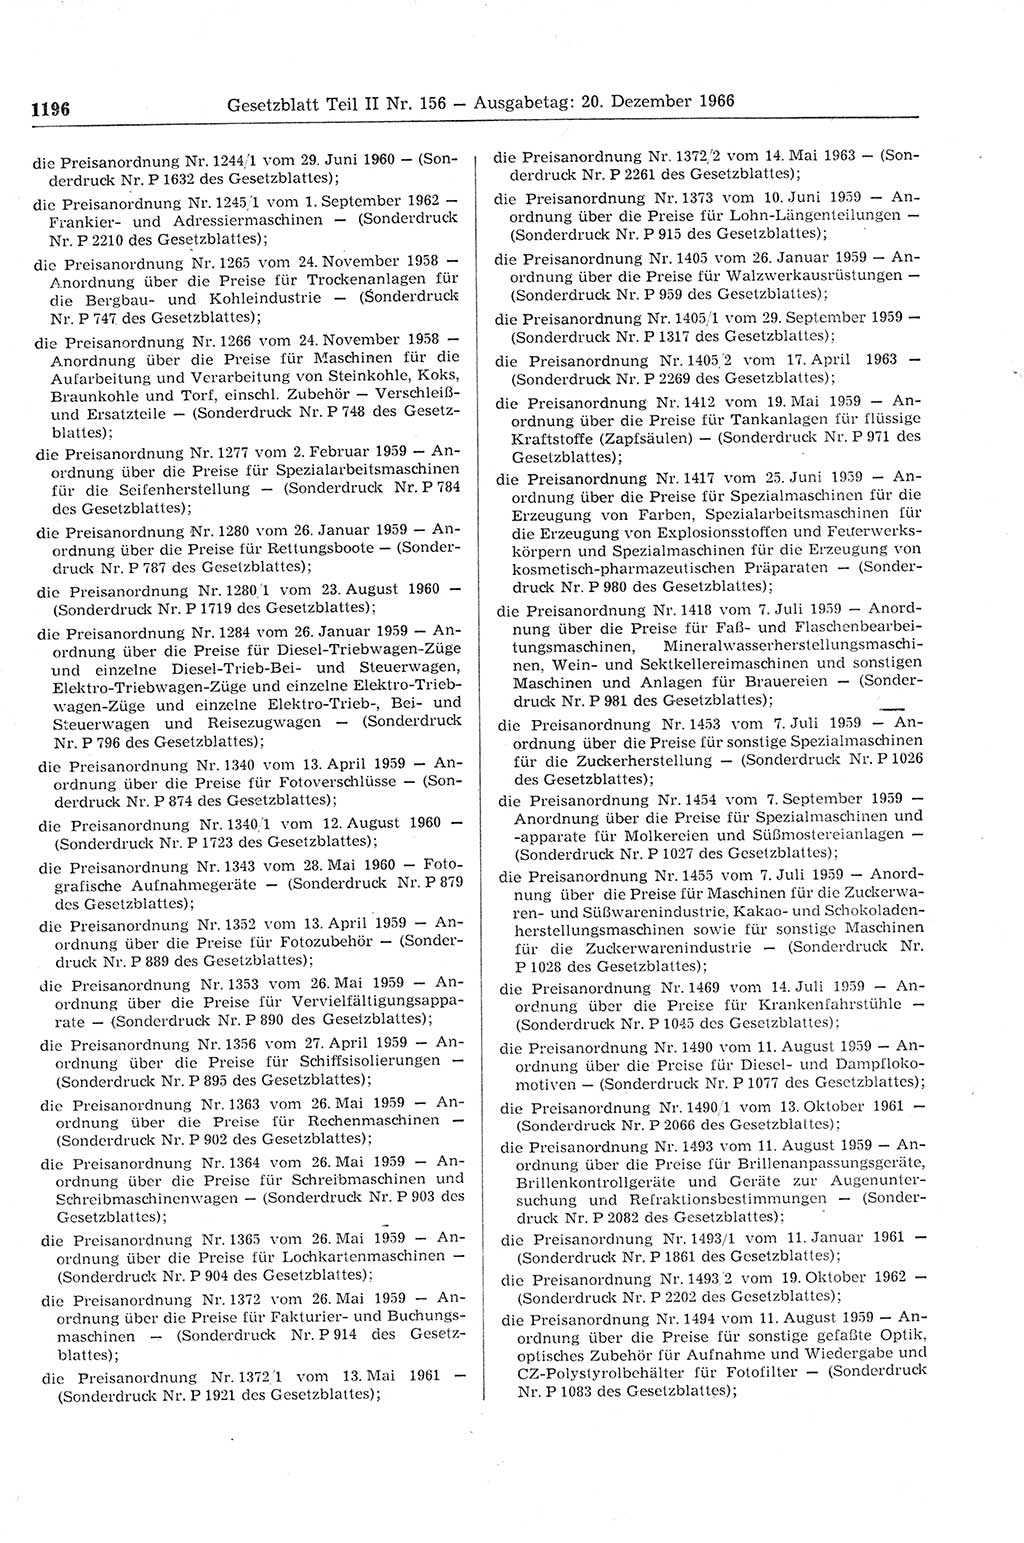 Gesetzblatt (GBl.) der Deutschen Demokratischen Republik (DDR) Teil ⅠⅠ 1966, Seite 1196 (GBl. DDR ⅠⅠ 1966, S. 1196)